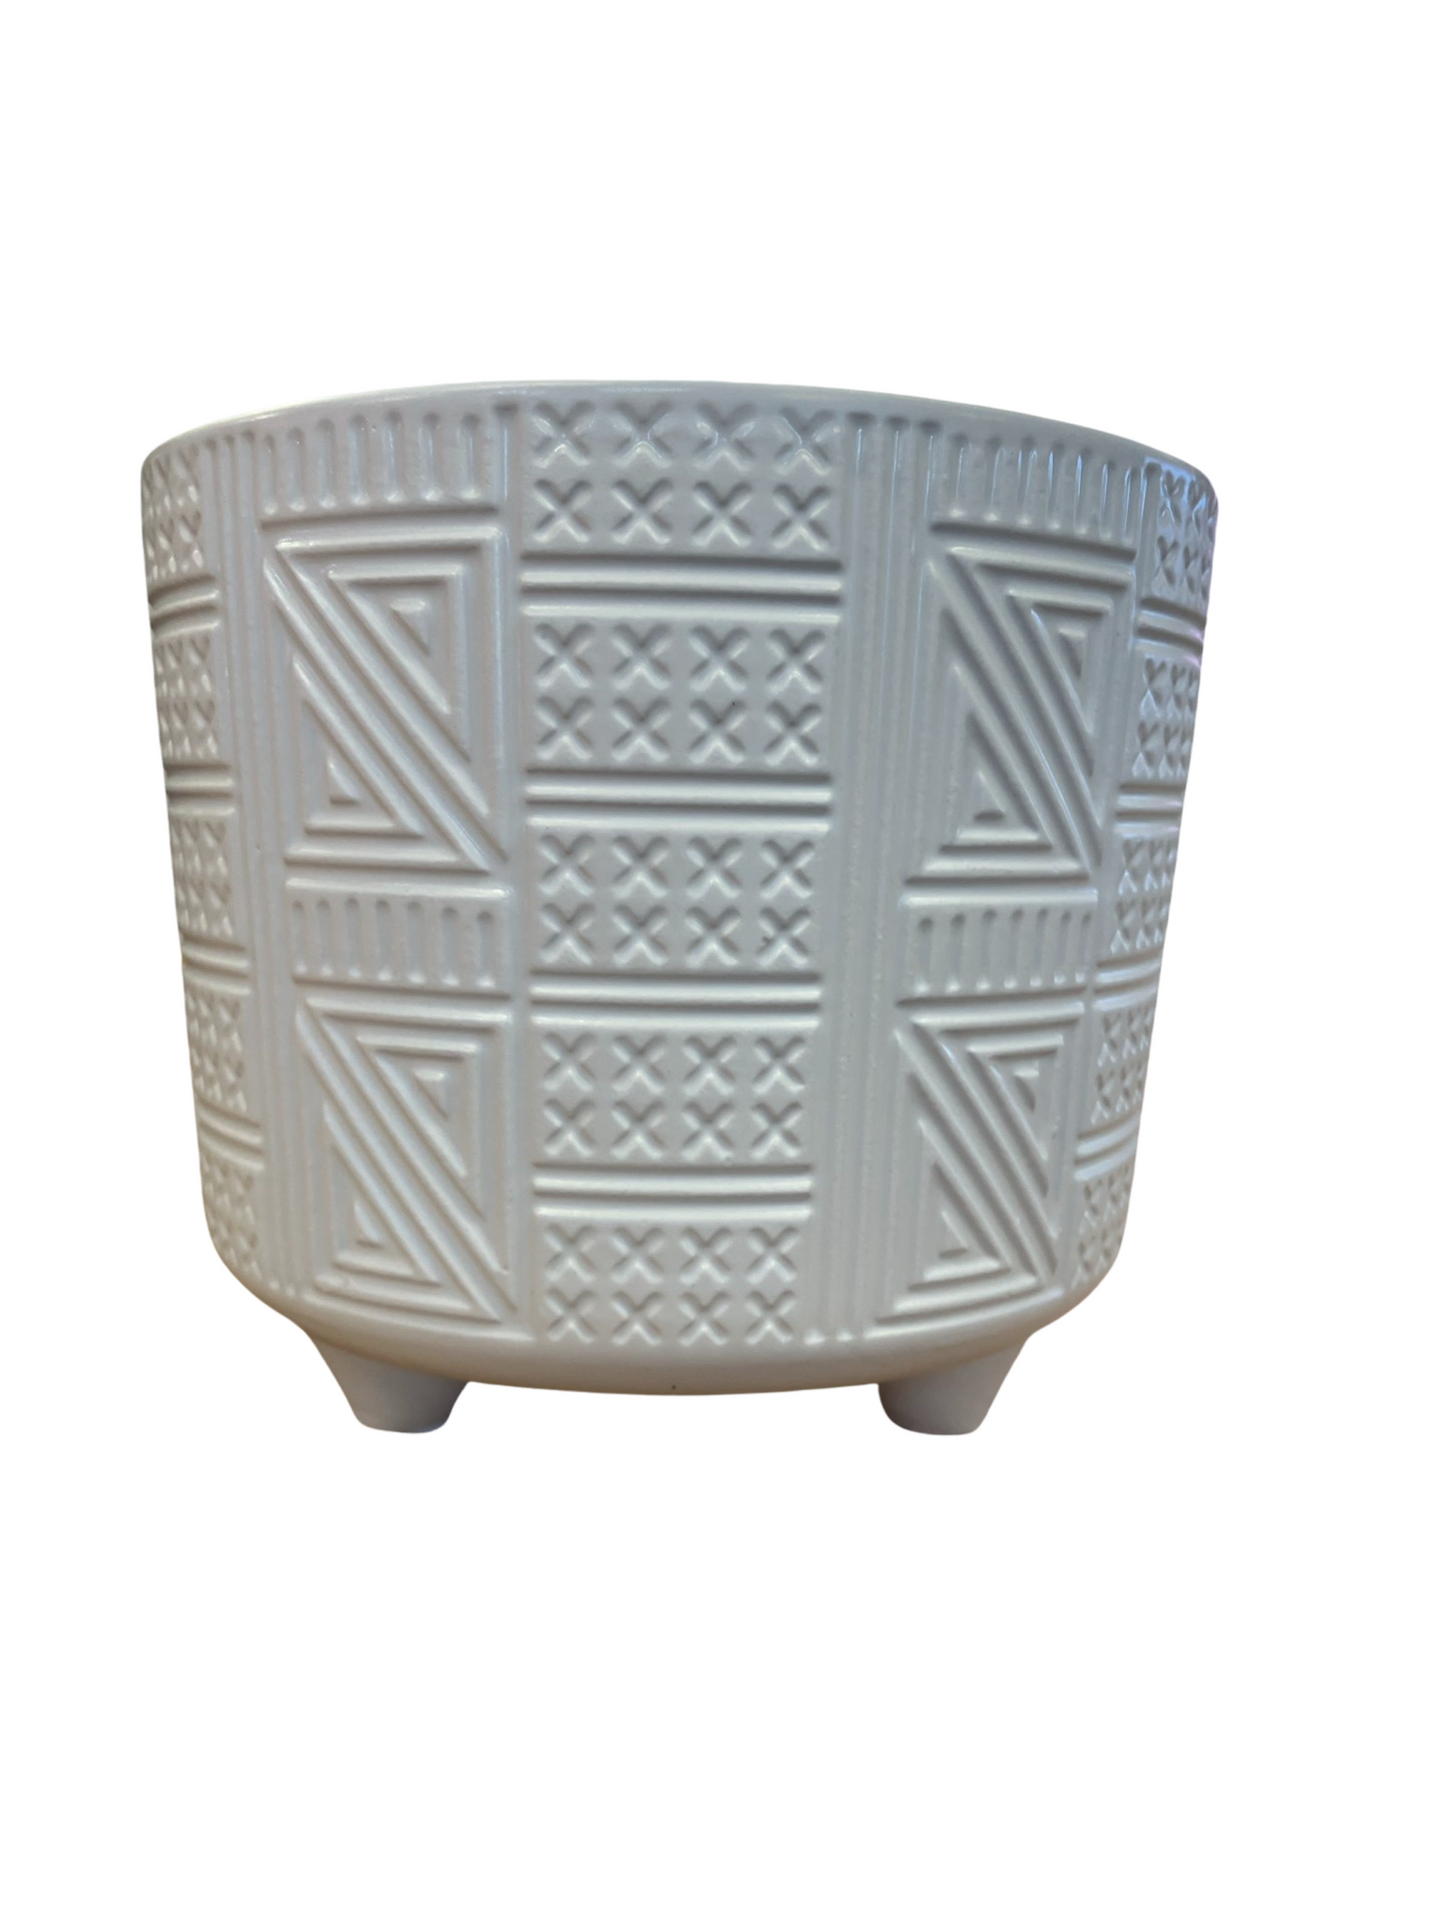 Ceramic Pot - Geo Texture - White - 3 Legs - 5"